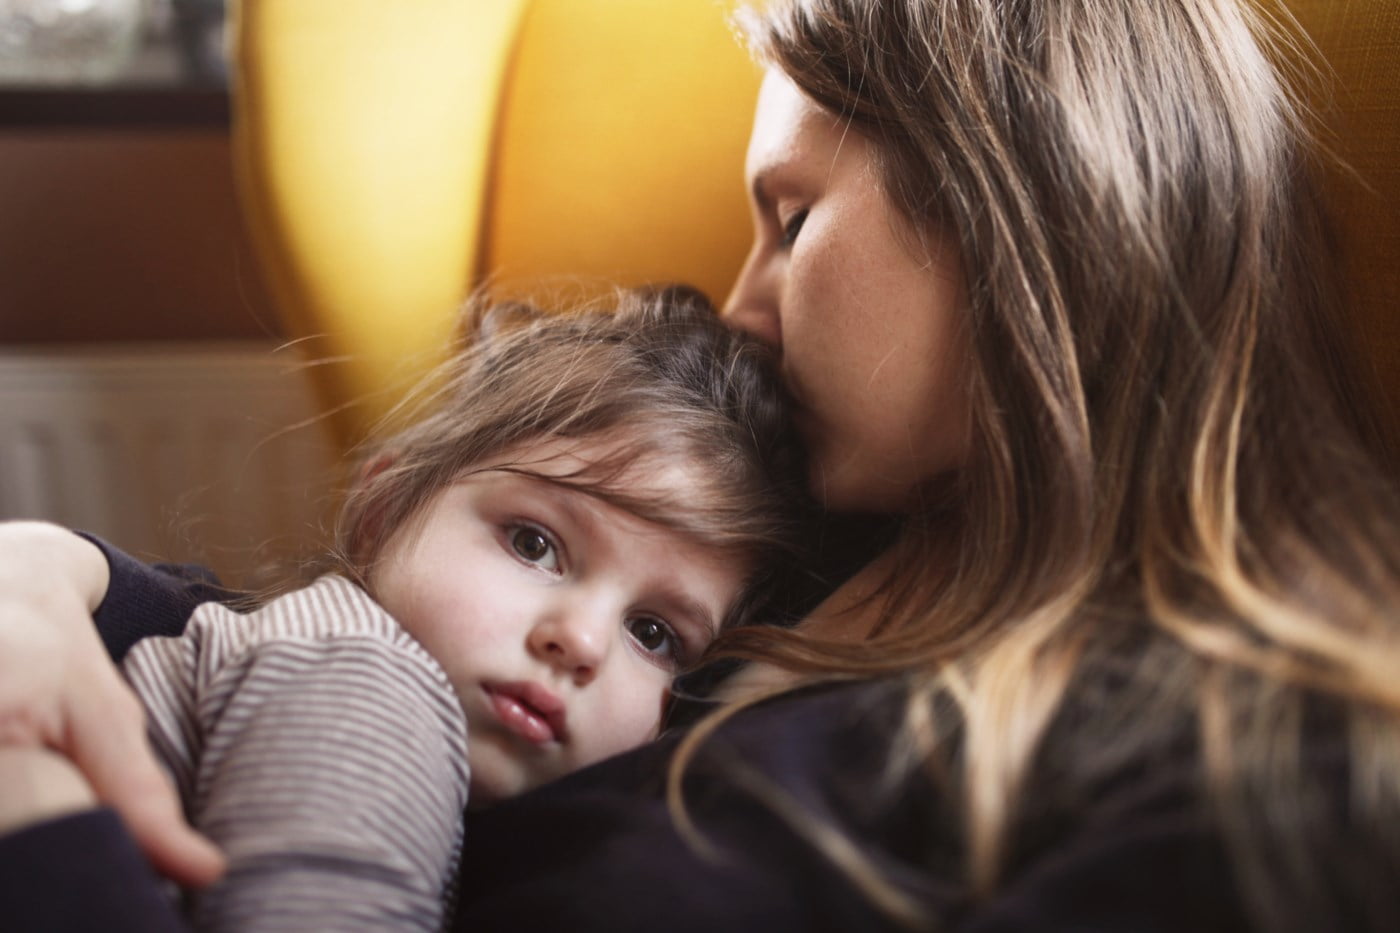 Mor kysser datteren sin på pannen mens de sitter i en komfortabel lenestol.